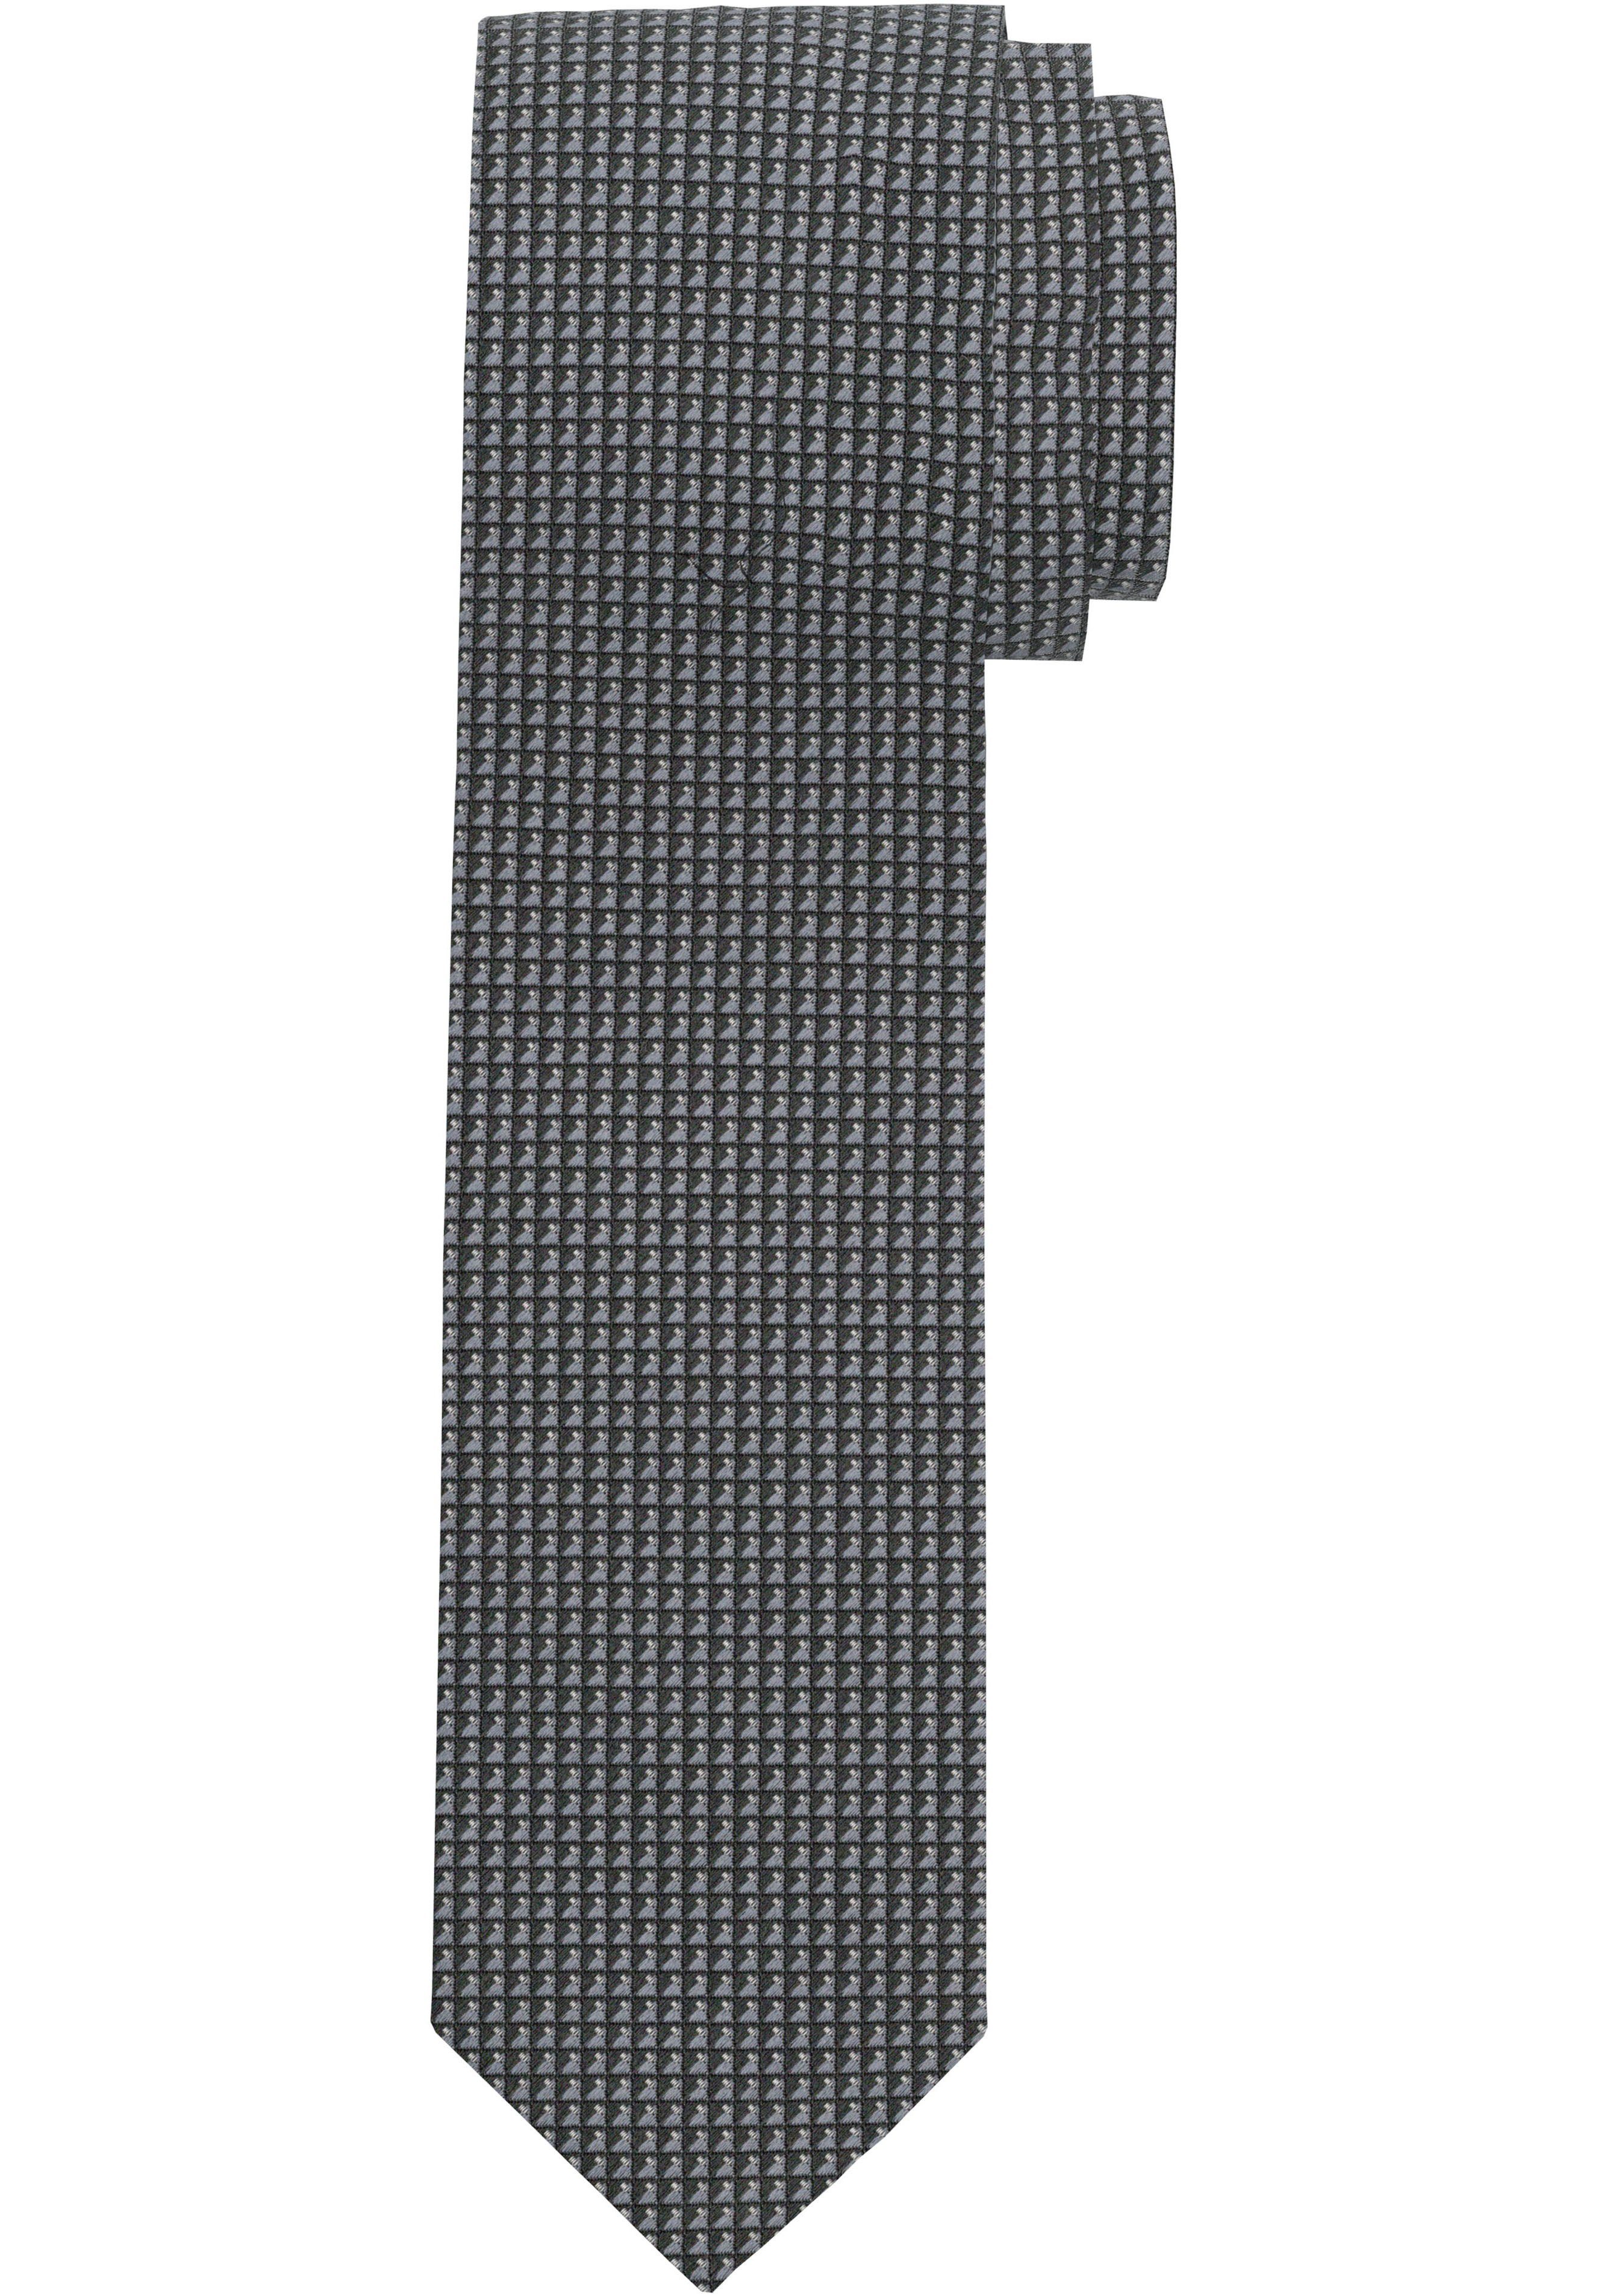 verkaufe gut OLYMP Krawatte Strukturierte grau Krawatte